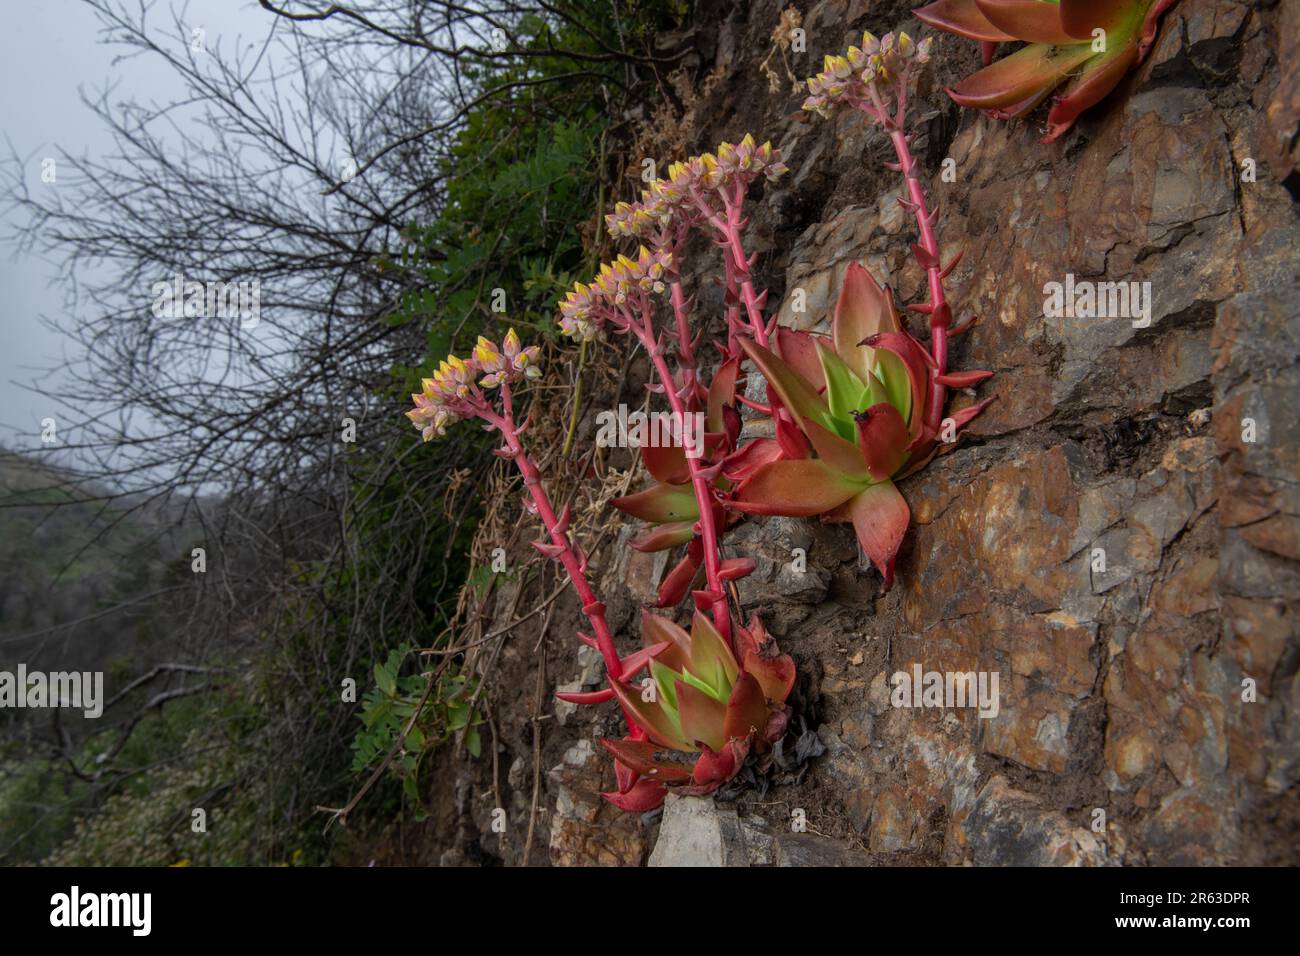 Canyon Dudleya ou live-Forever, Dudleya cymosa, une plante indigène succulente de la Californie floraison à point Reyes National Seashore, CA. Banque D'Images